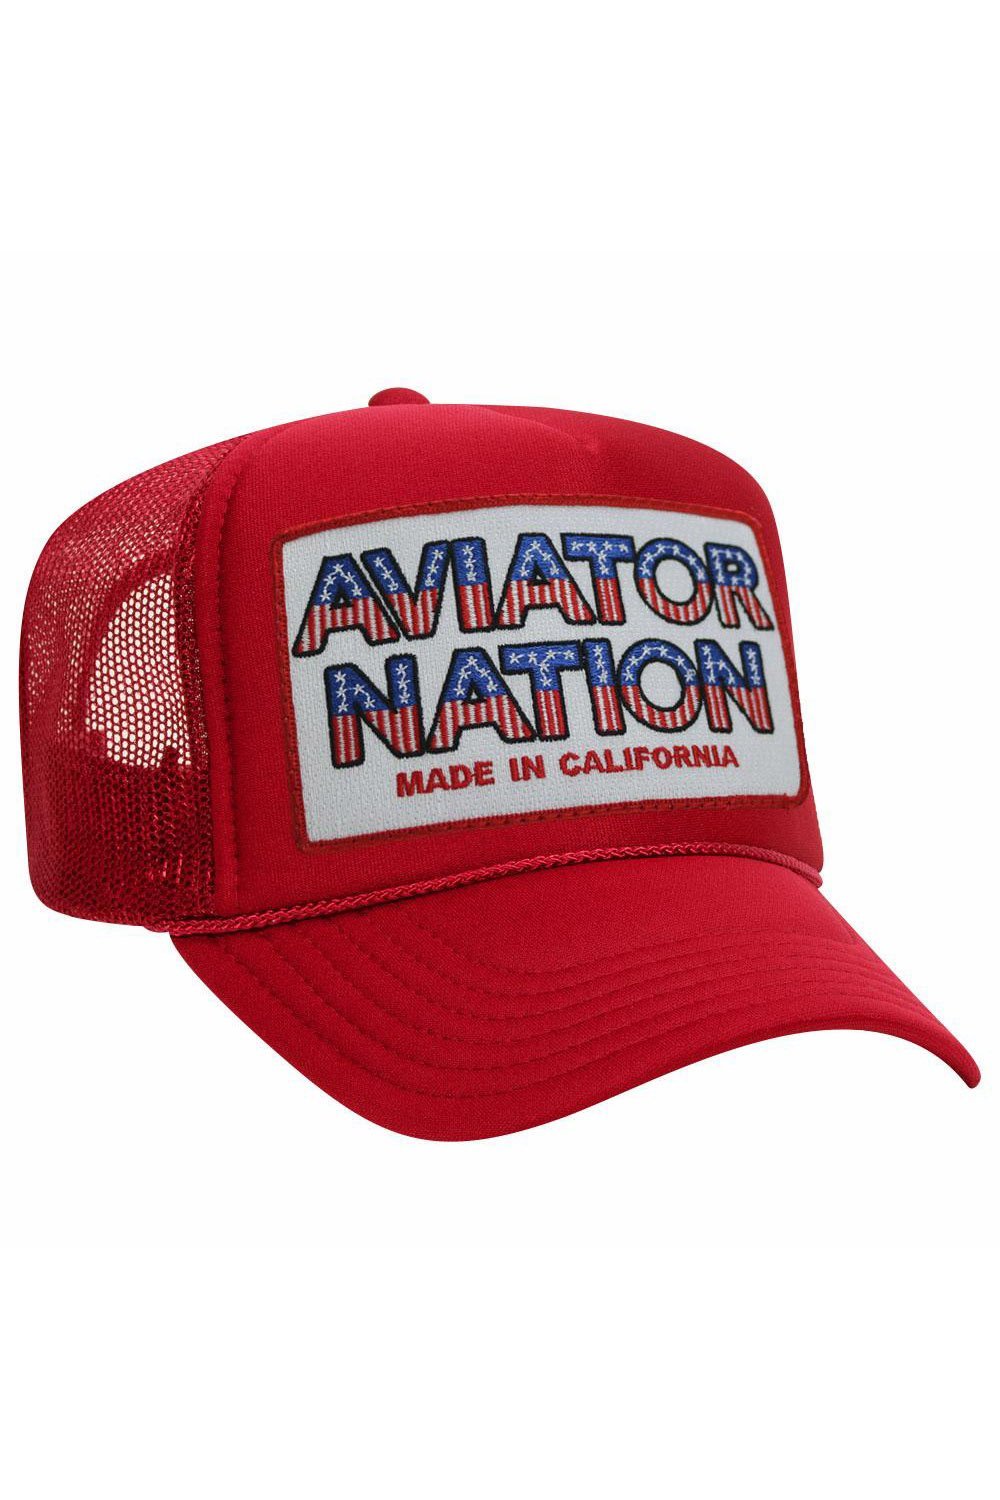 AVIATOR NATION USA PATRIOTIC VINTAGE TRUCKER HAT - Aviator Nation